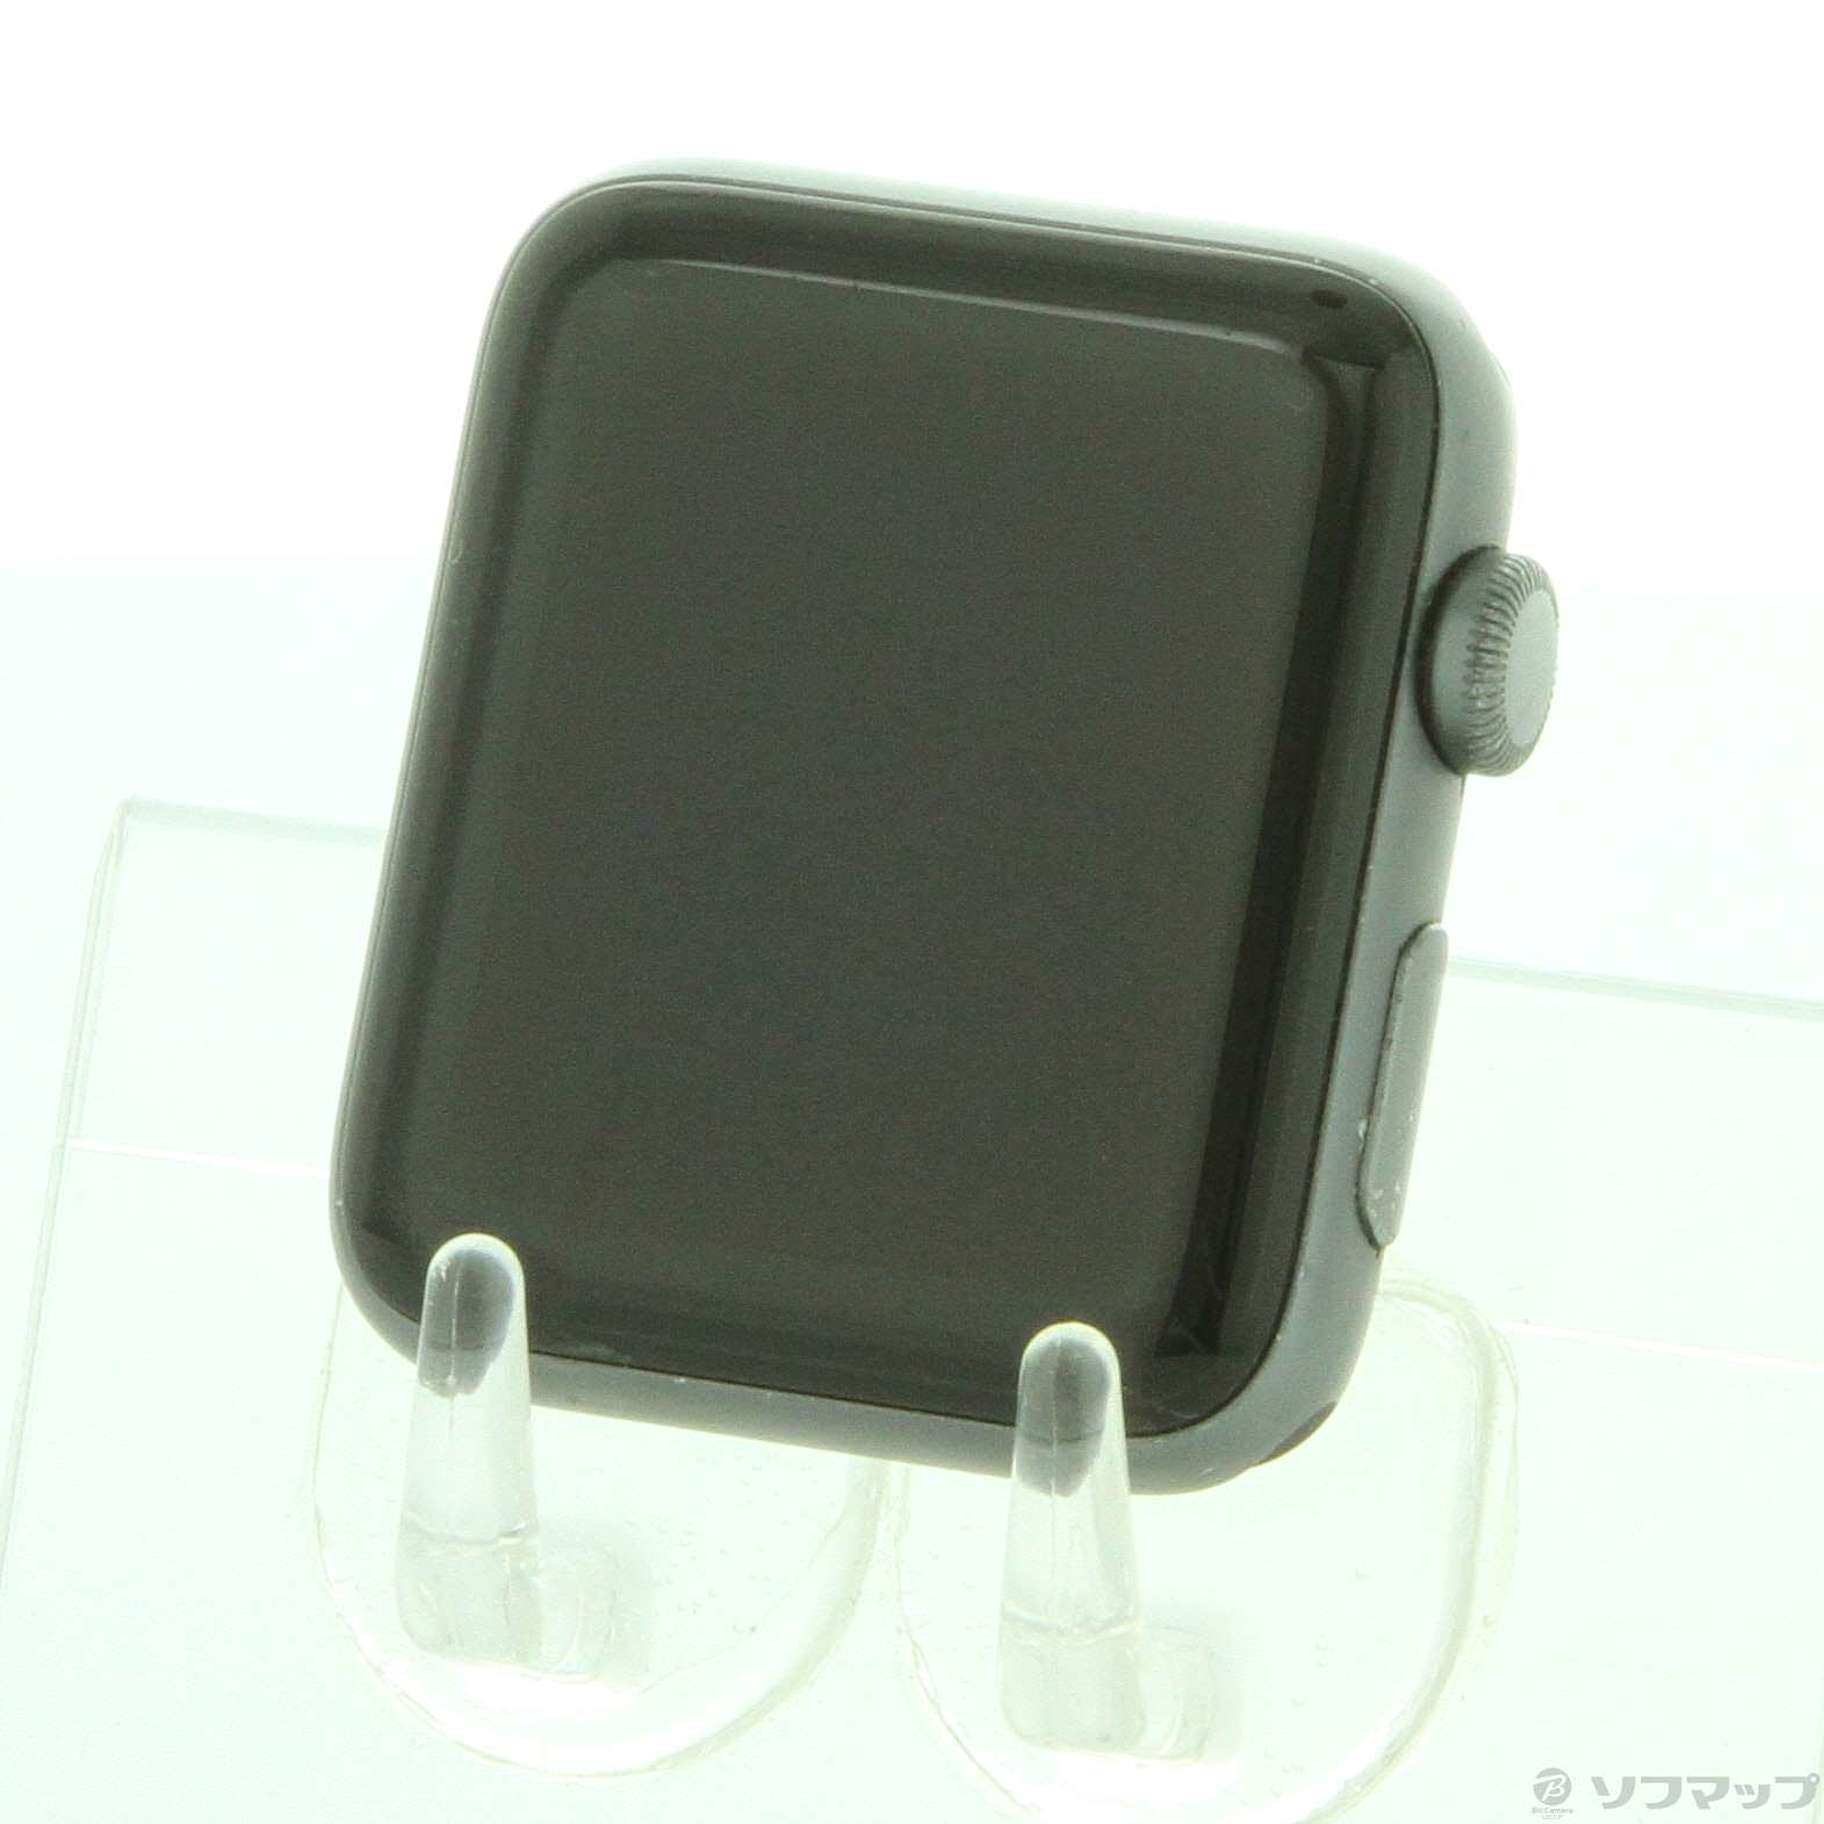 中古】Apple Watch Series 3 GPS 42mm スペースグレイアルミニウム